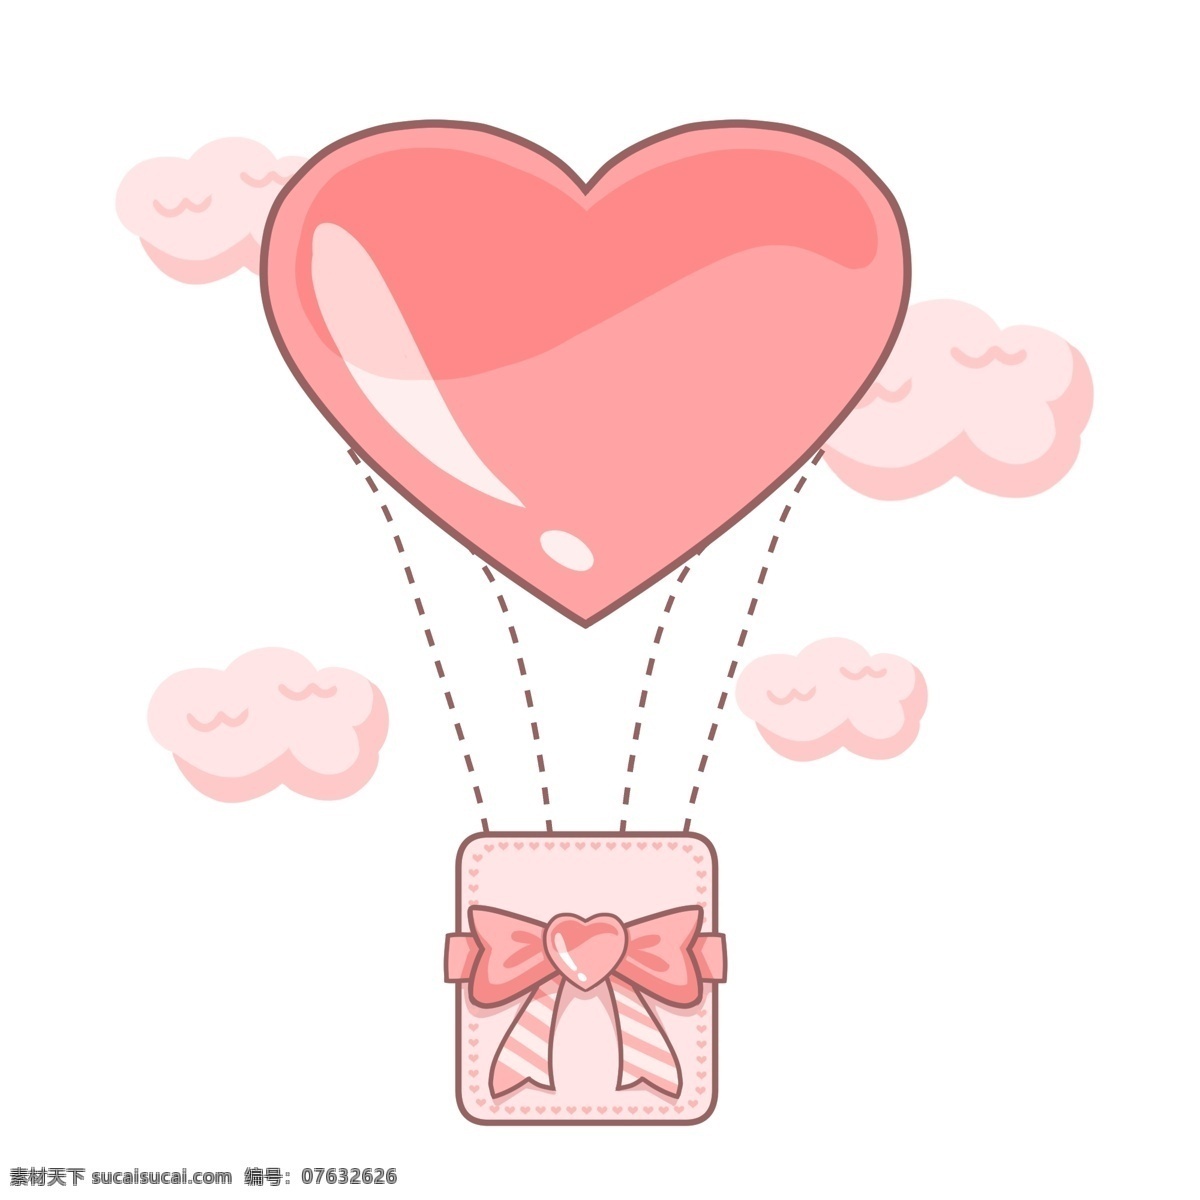 情人节 热气球 插画 粉色的热气球 漂亮的热气球 卡通插画 手绘 情人节快乐 情人节热气球